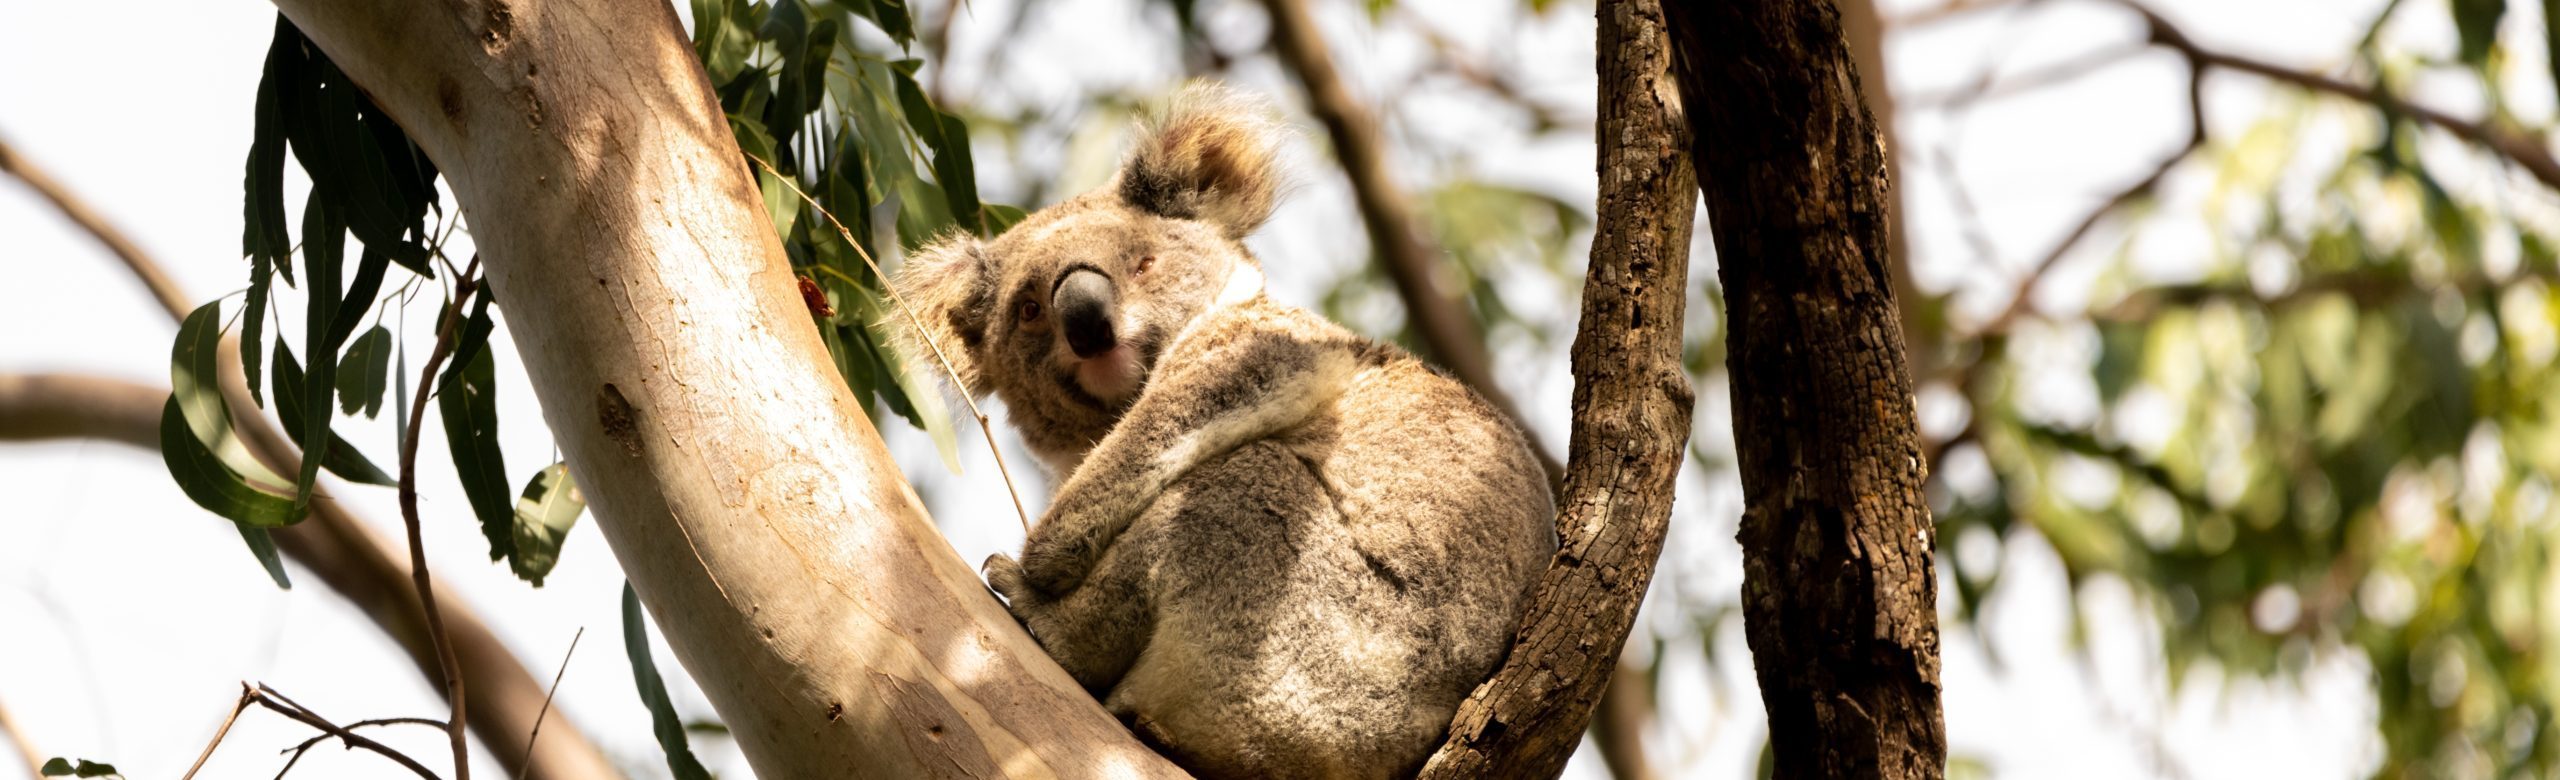 Koala in Eucalyptus Tree